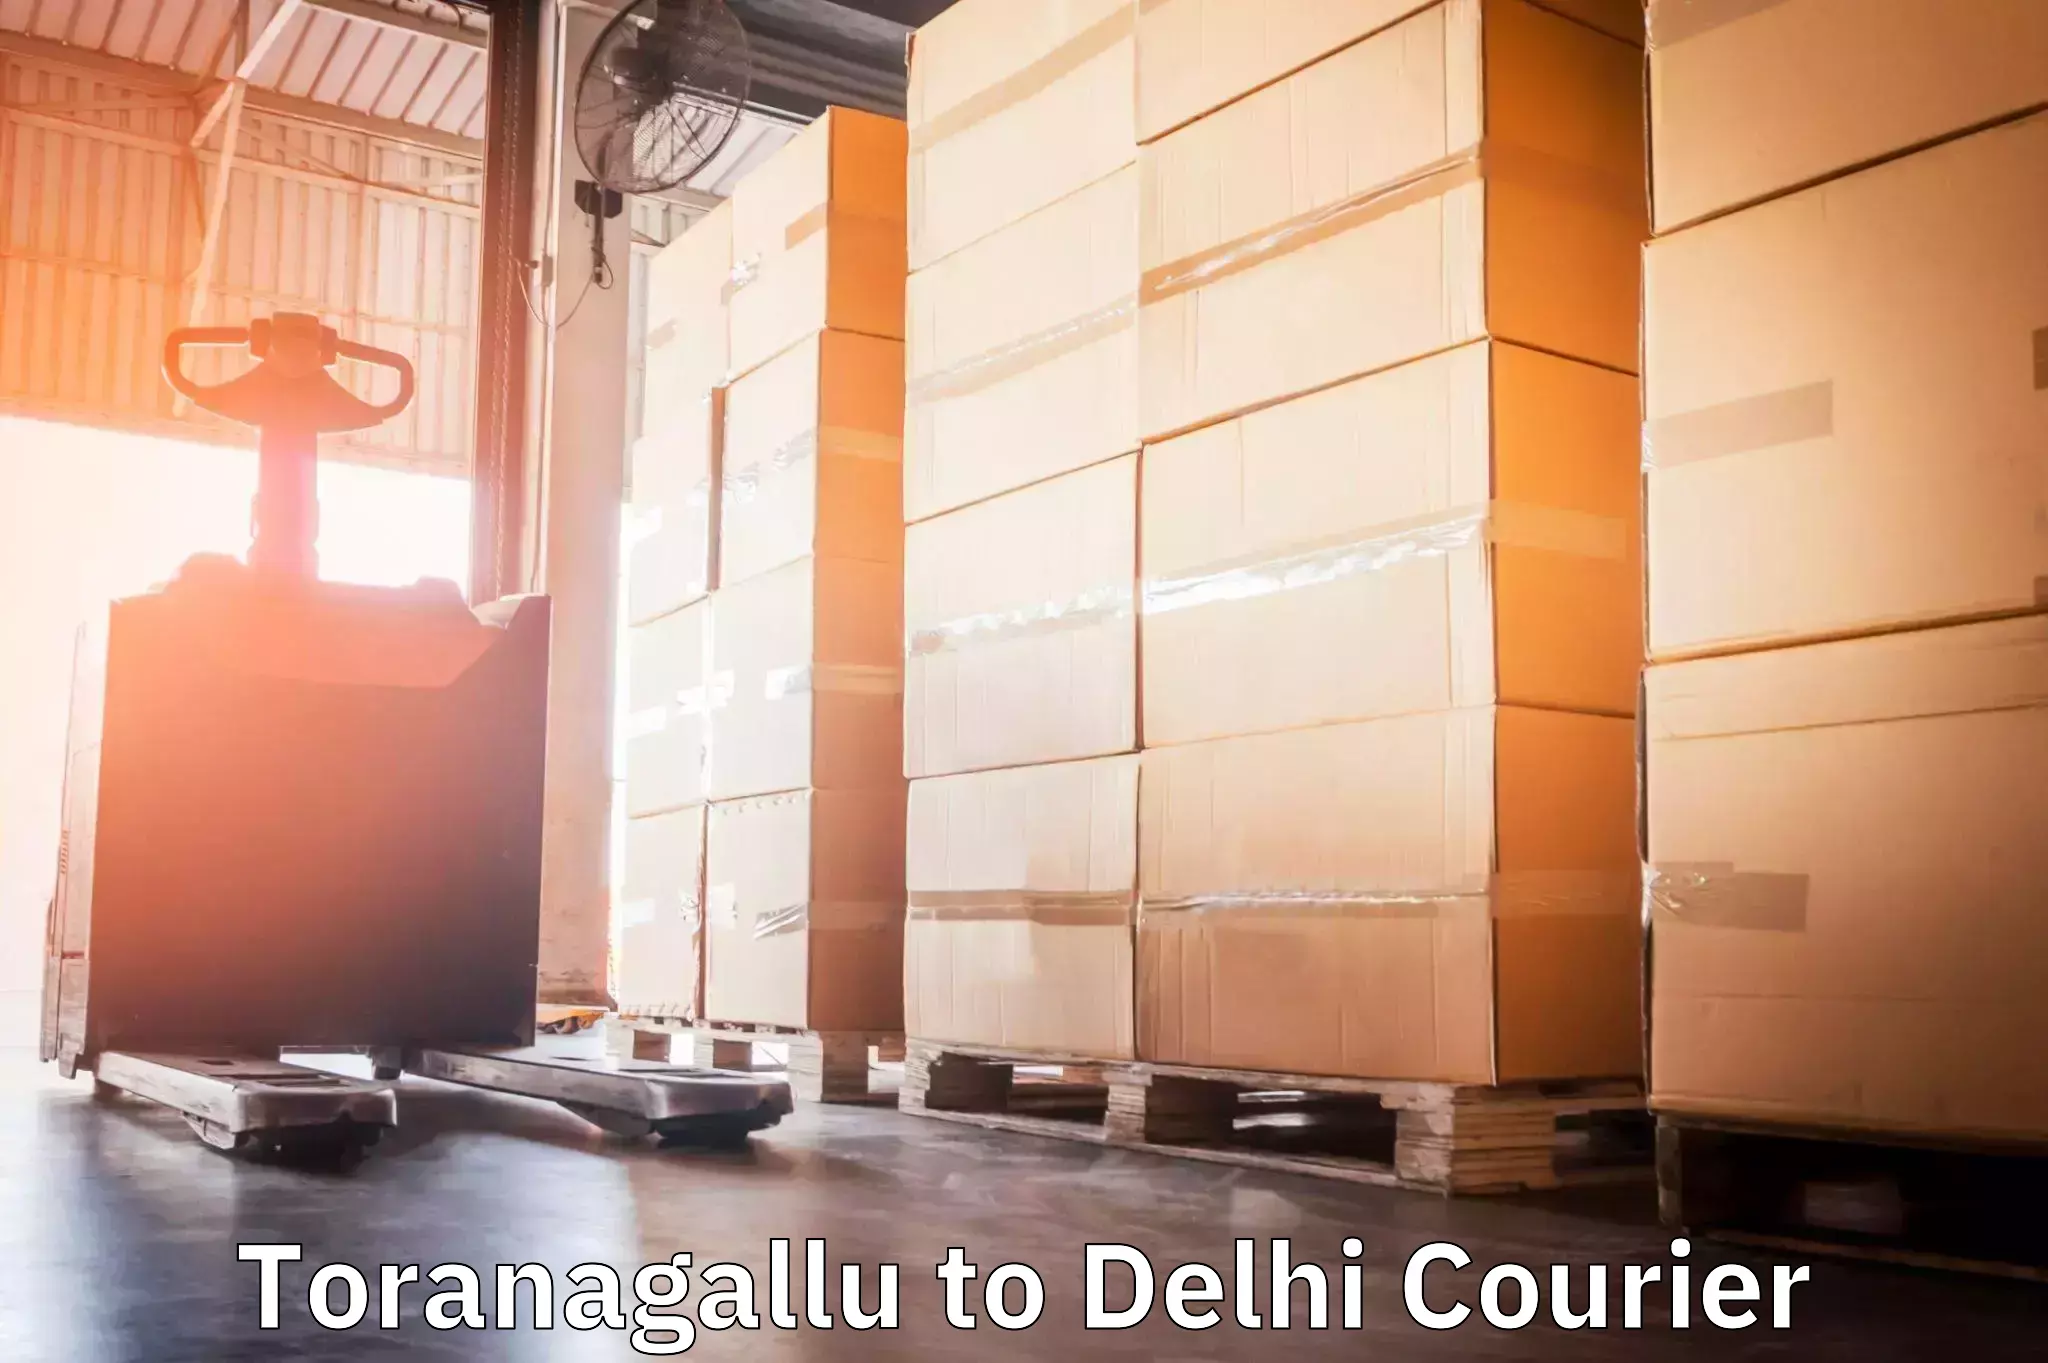 Next-day freight services Toranagallu to East Delhi